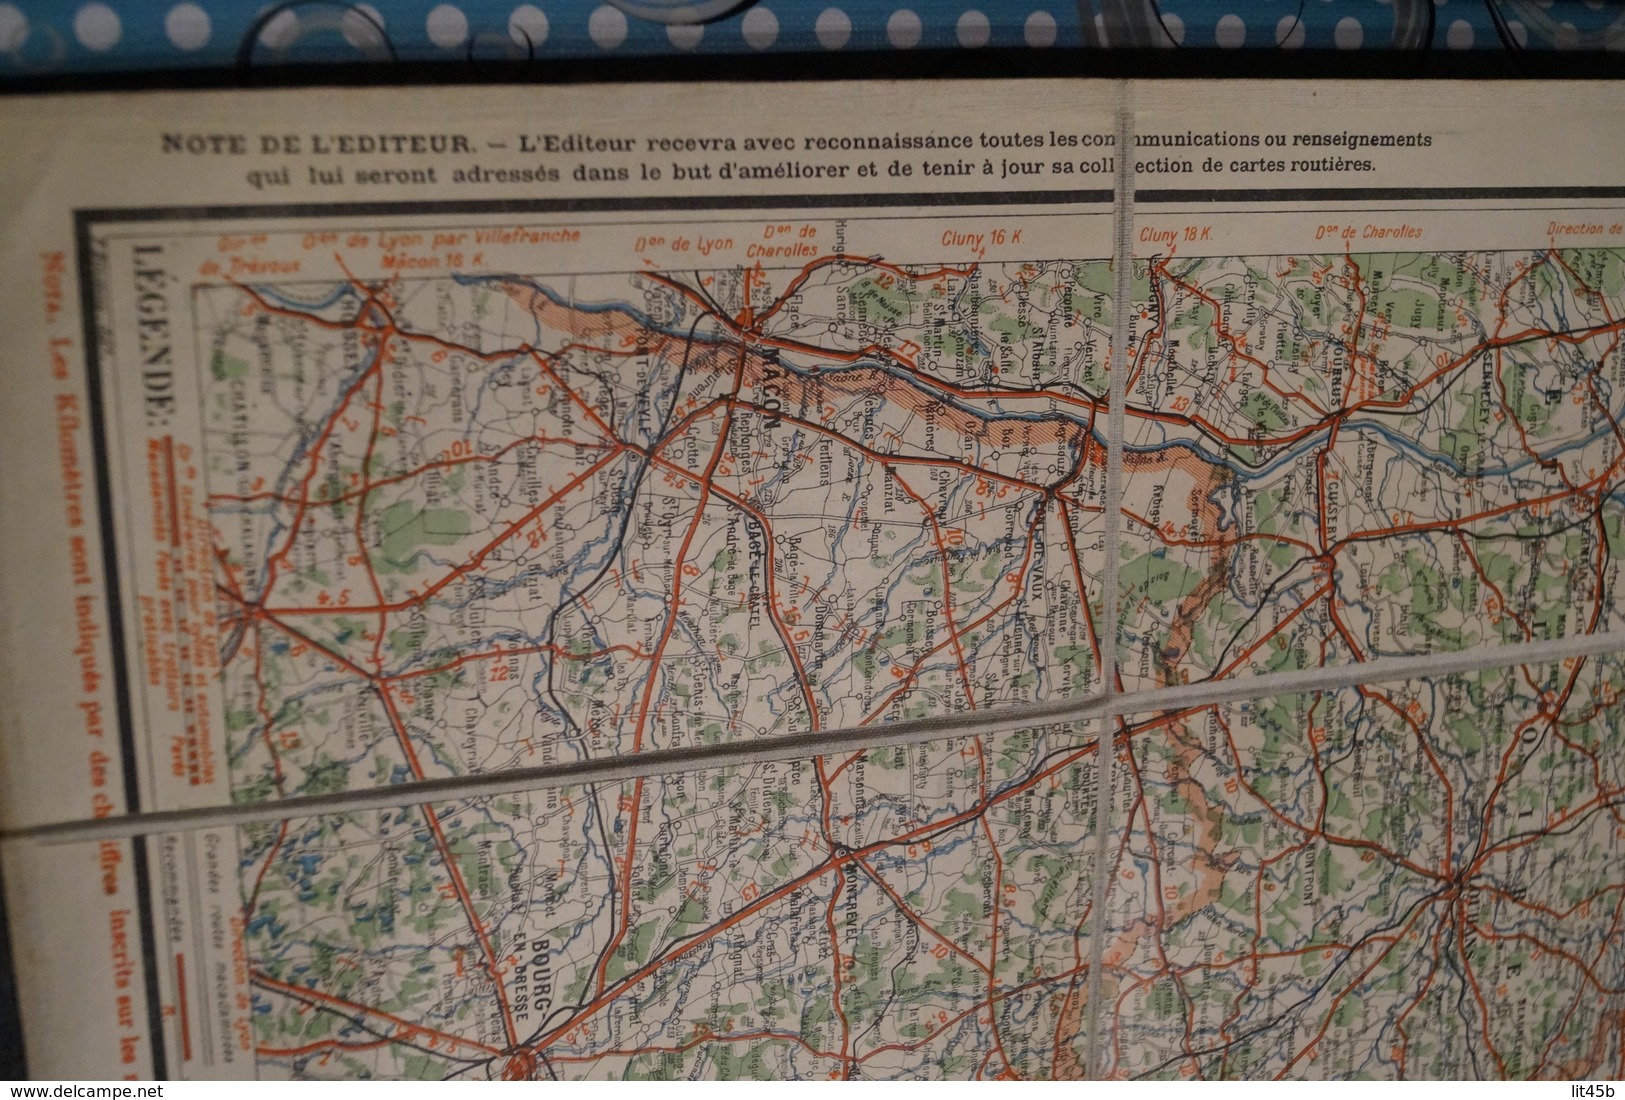 Très belle ancienne carte Taride (sur toile) pour Cycliste et automoblistes,Est de la France,section Sud,N°10,collection